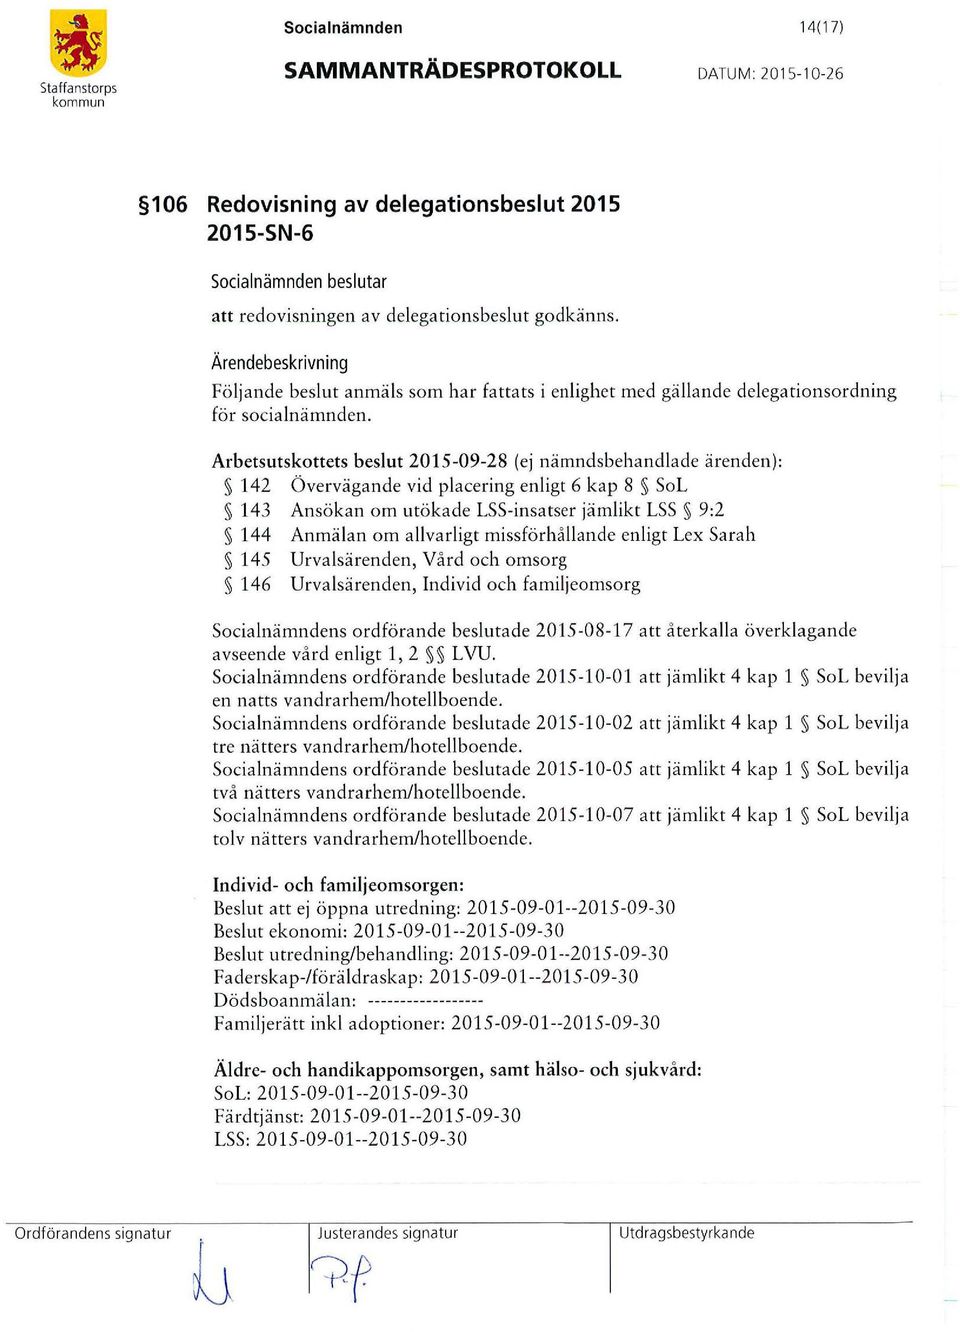 Arbetsutskottets beslut 2015-09-28 (ej nämndsbehandlade ärenden ): 142 Övervägande vid placering enligt 6 kap 8 Sol 143 Ansökan om utökade lss-insatser jämlikt LSS 9:2 144 Anmälan om a llvarligt